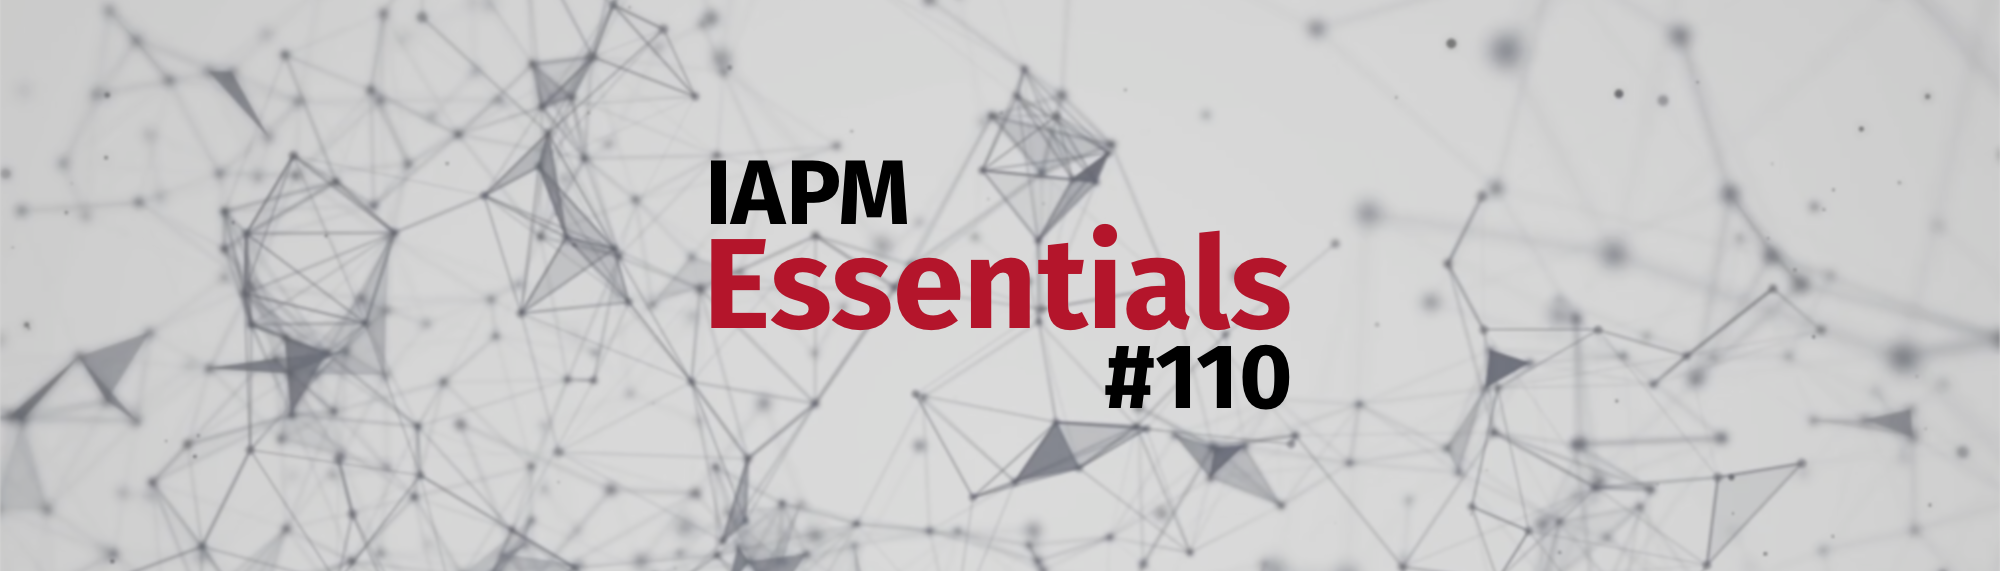 IAPM Essentials #110 - PM news | IAPM